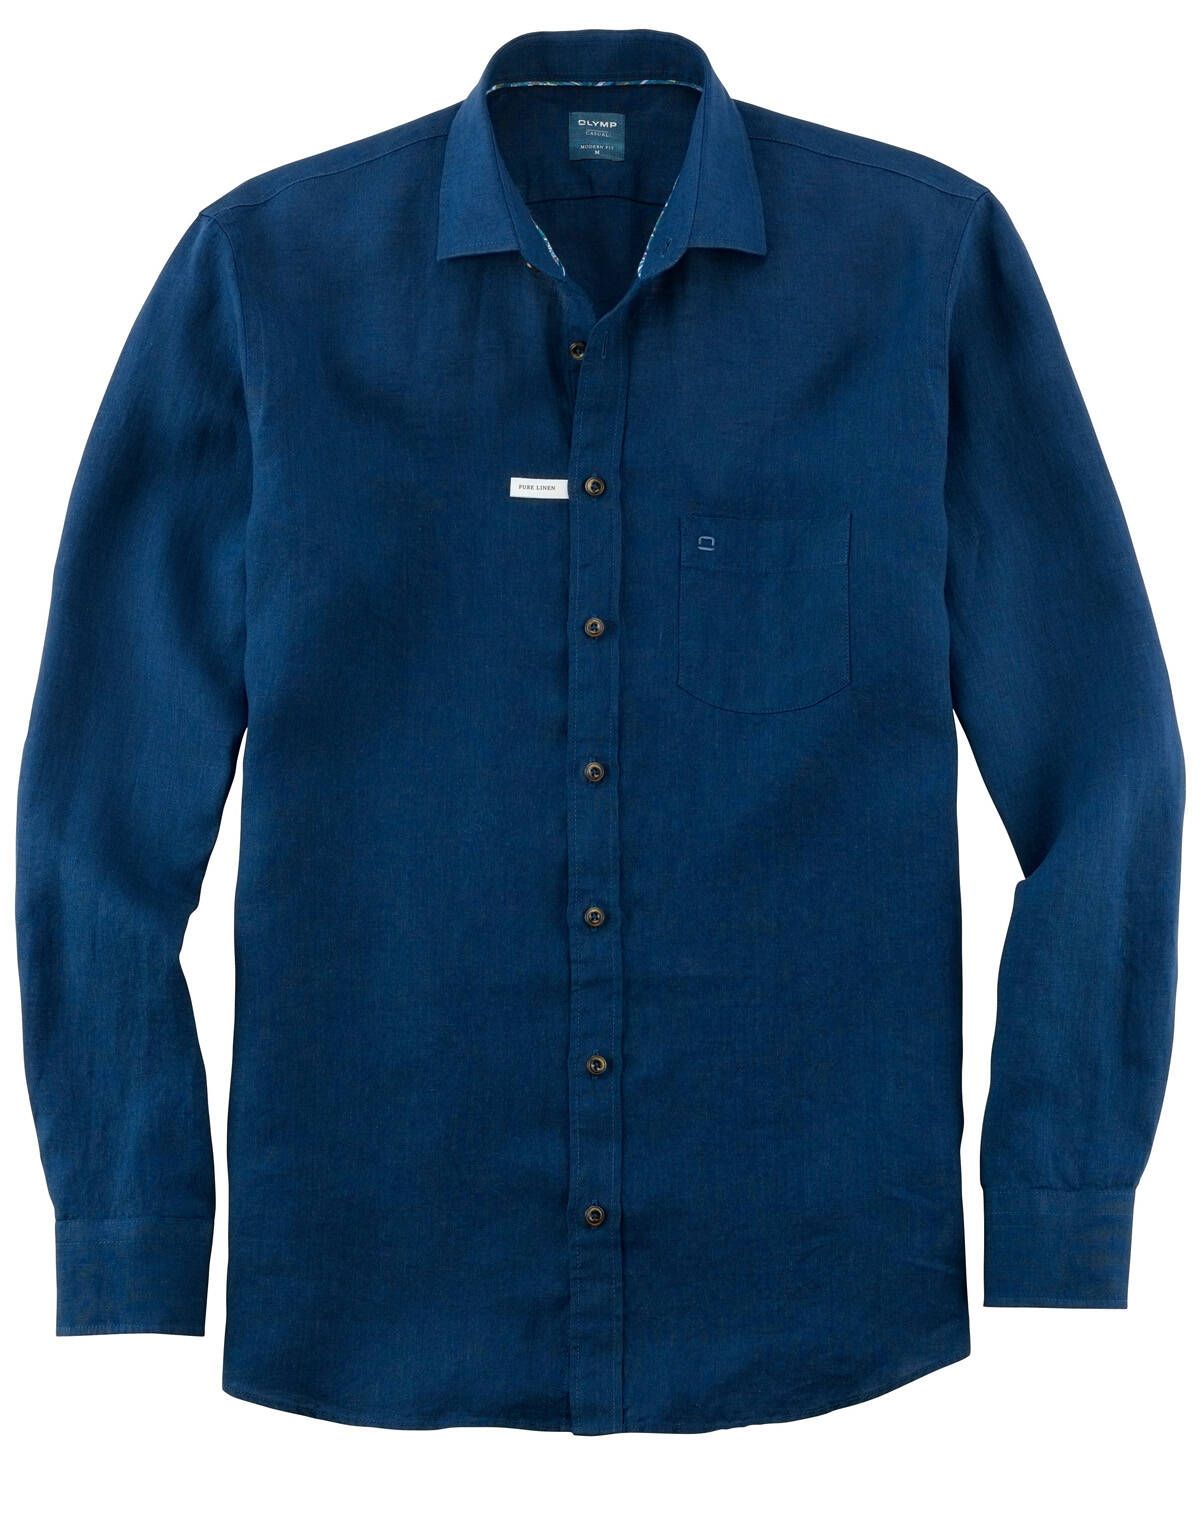 Рубашка льняная синяя мужская OLYMP Casual[СИНИЙ]